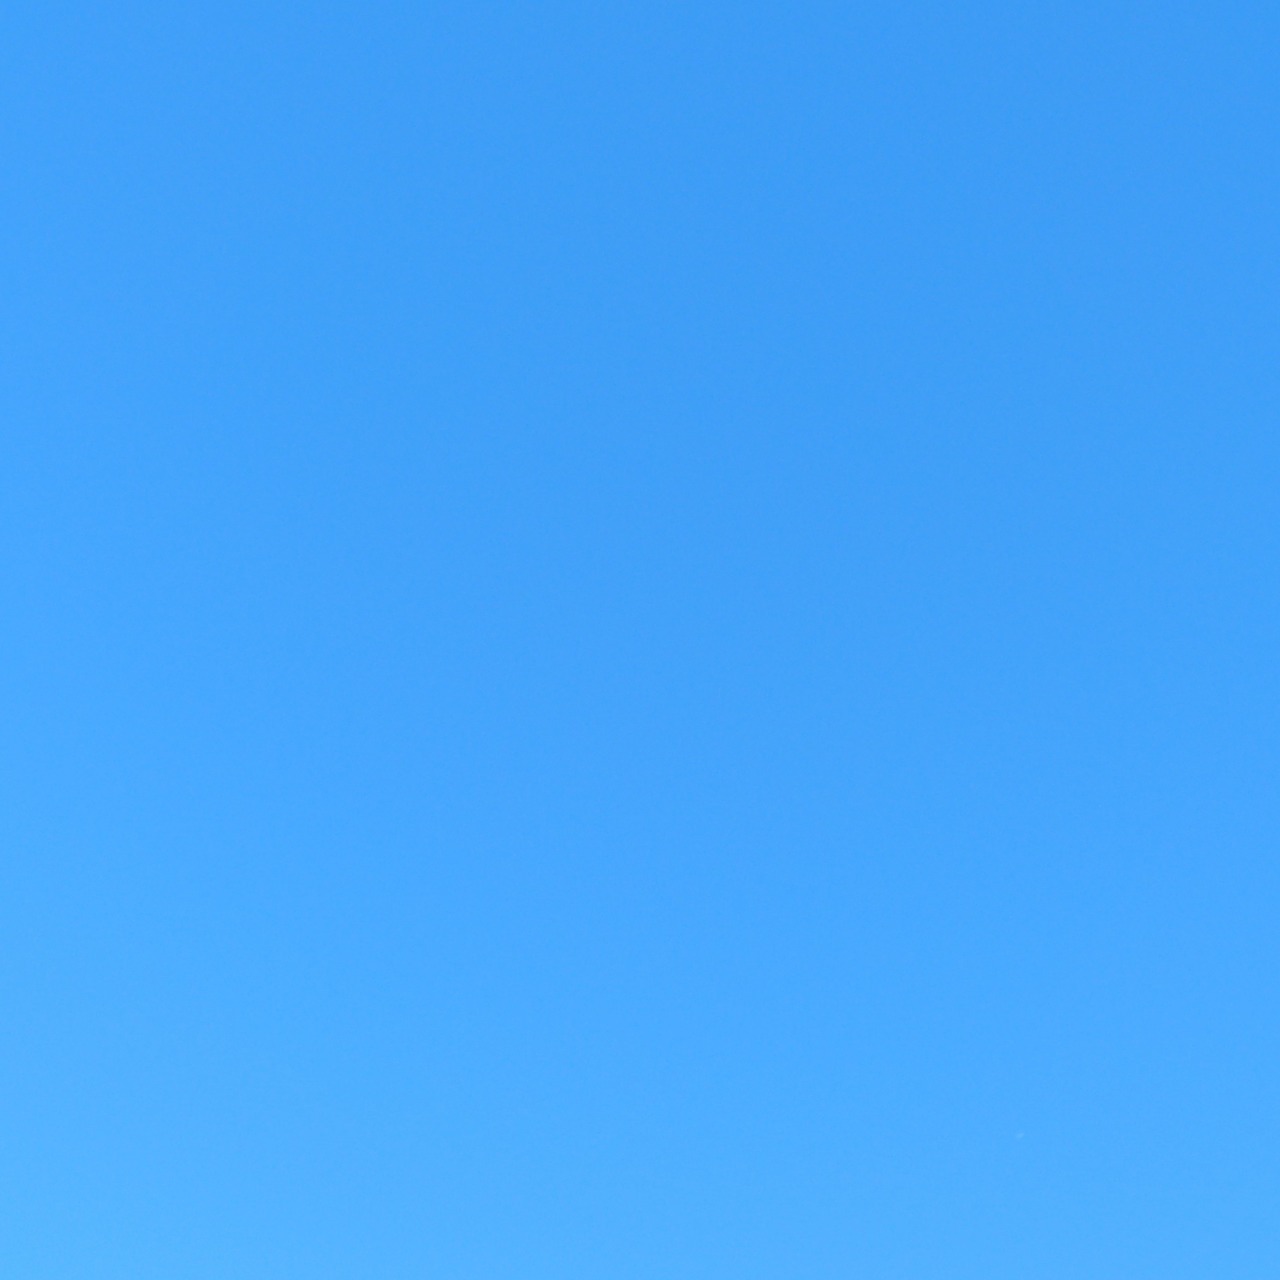 Download Plain Light Blue Sky Color Background